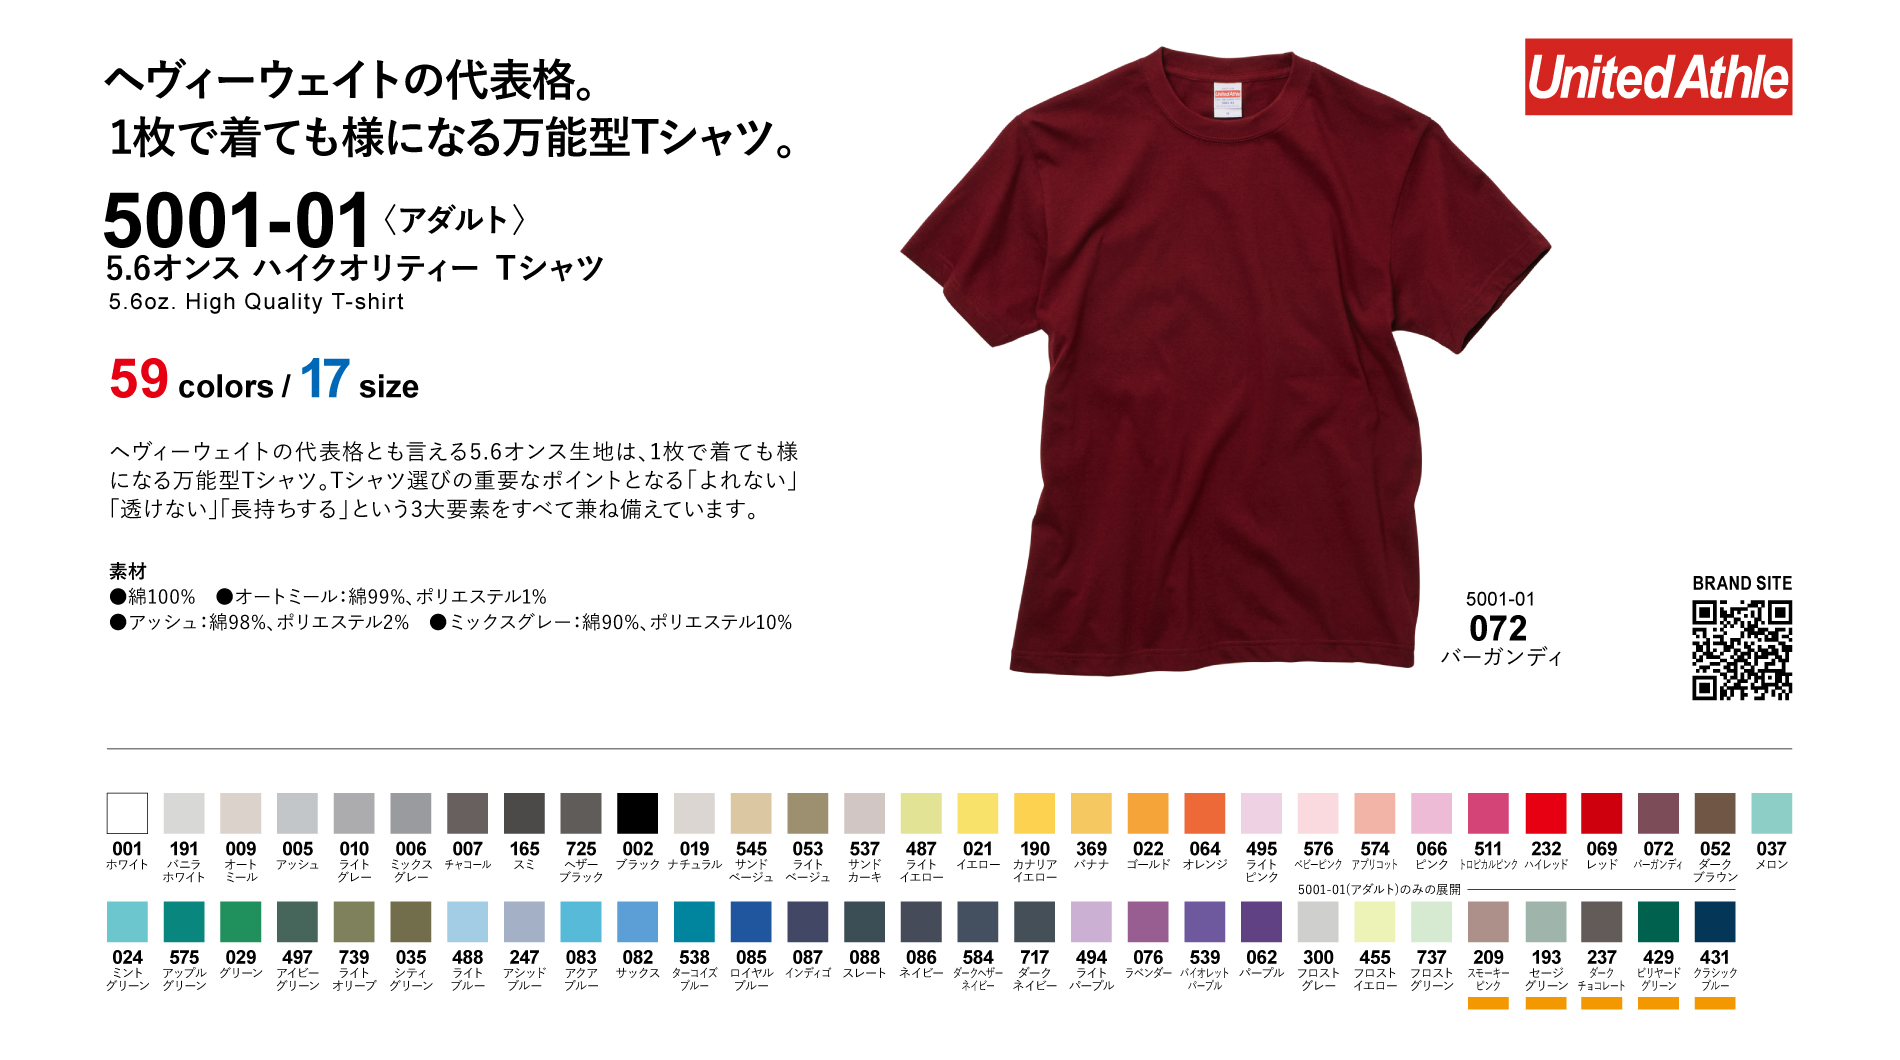 5.6オンス ハイクオリティー Tシャツ 〈アダルト〉Style No. 5001-01